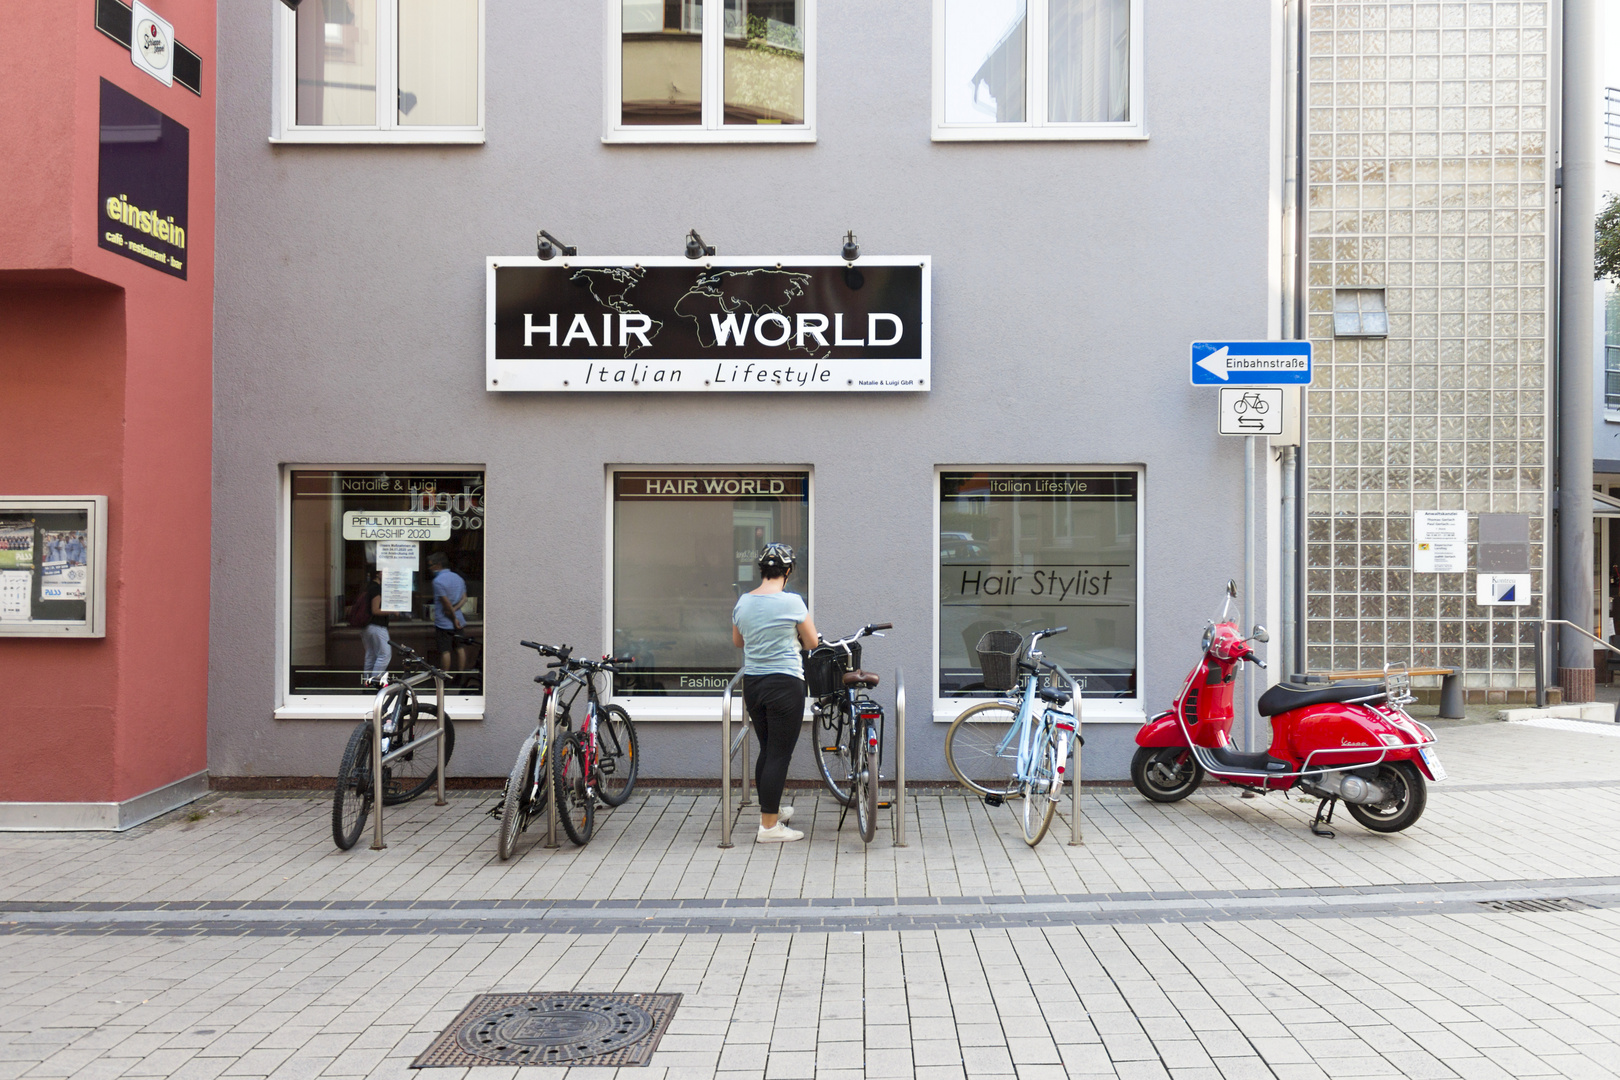 HAIR WORLD Italian Lifestyle in Aschaffenburg